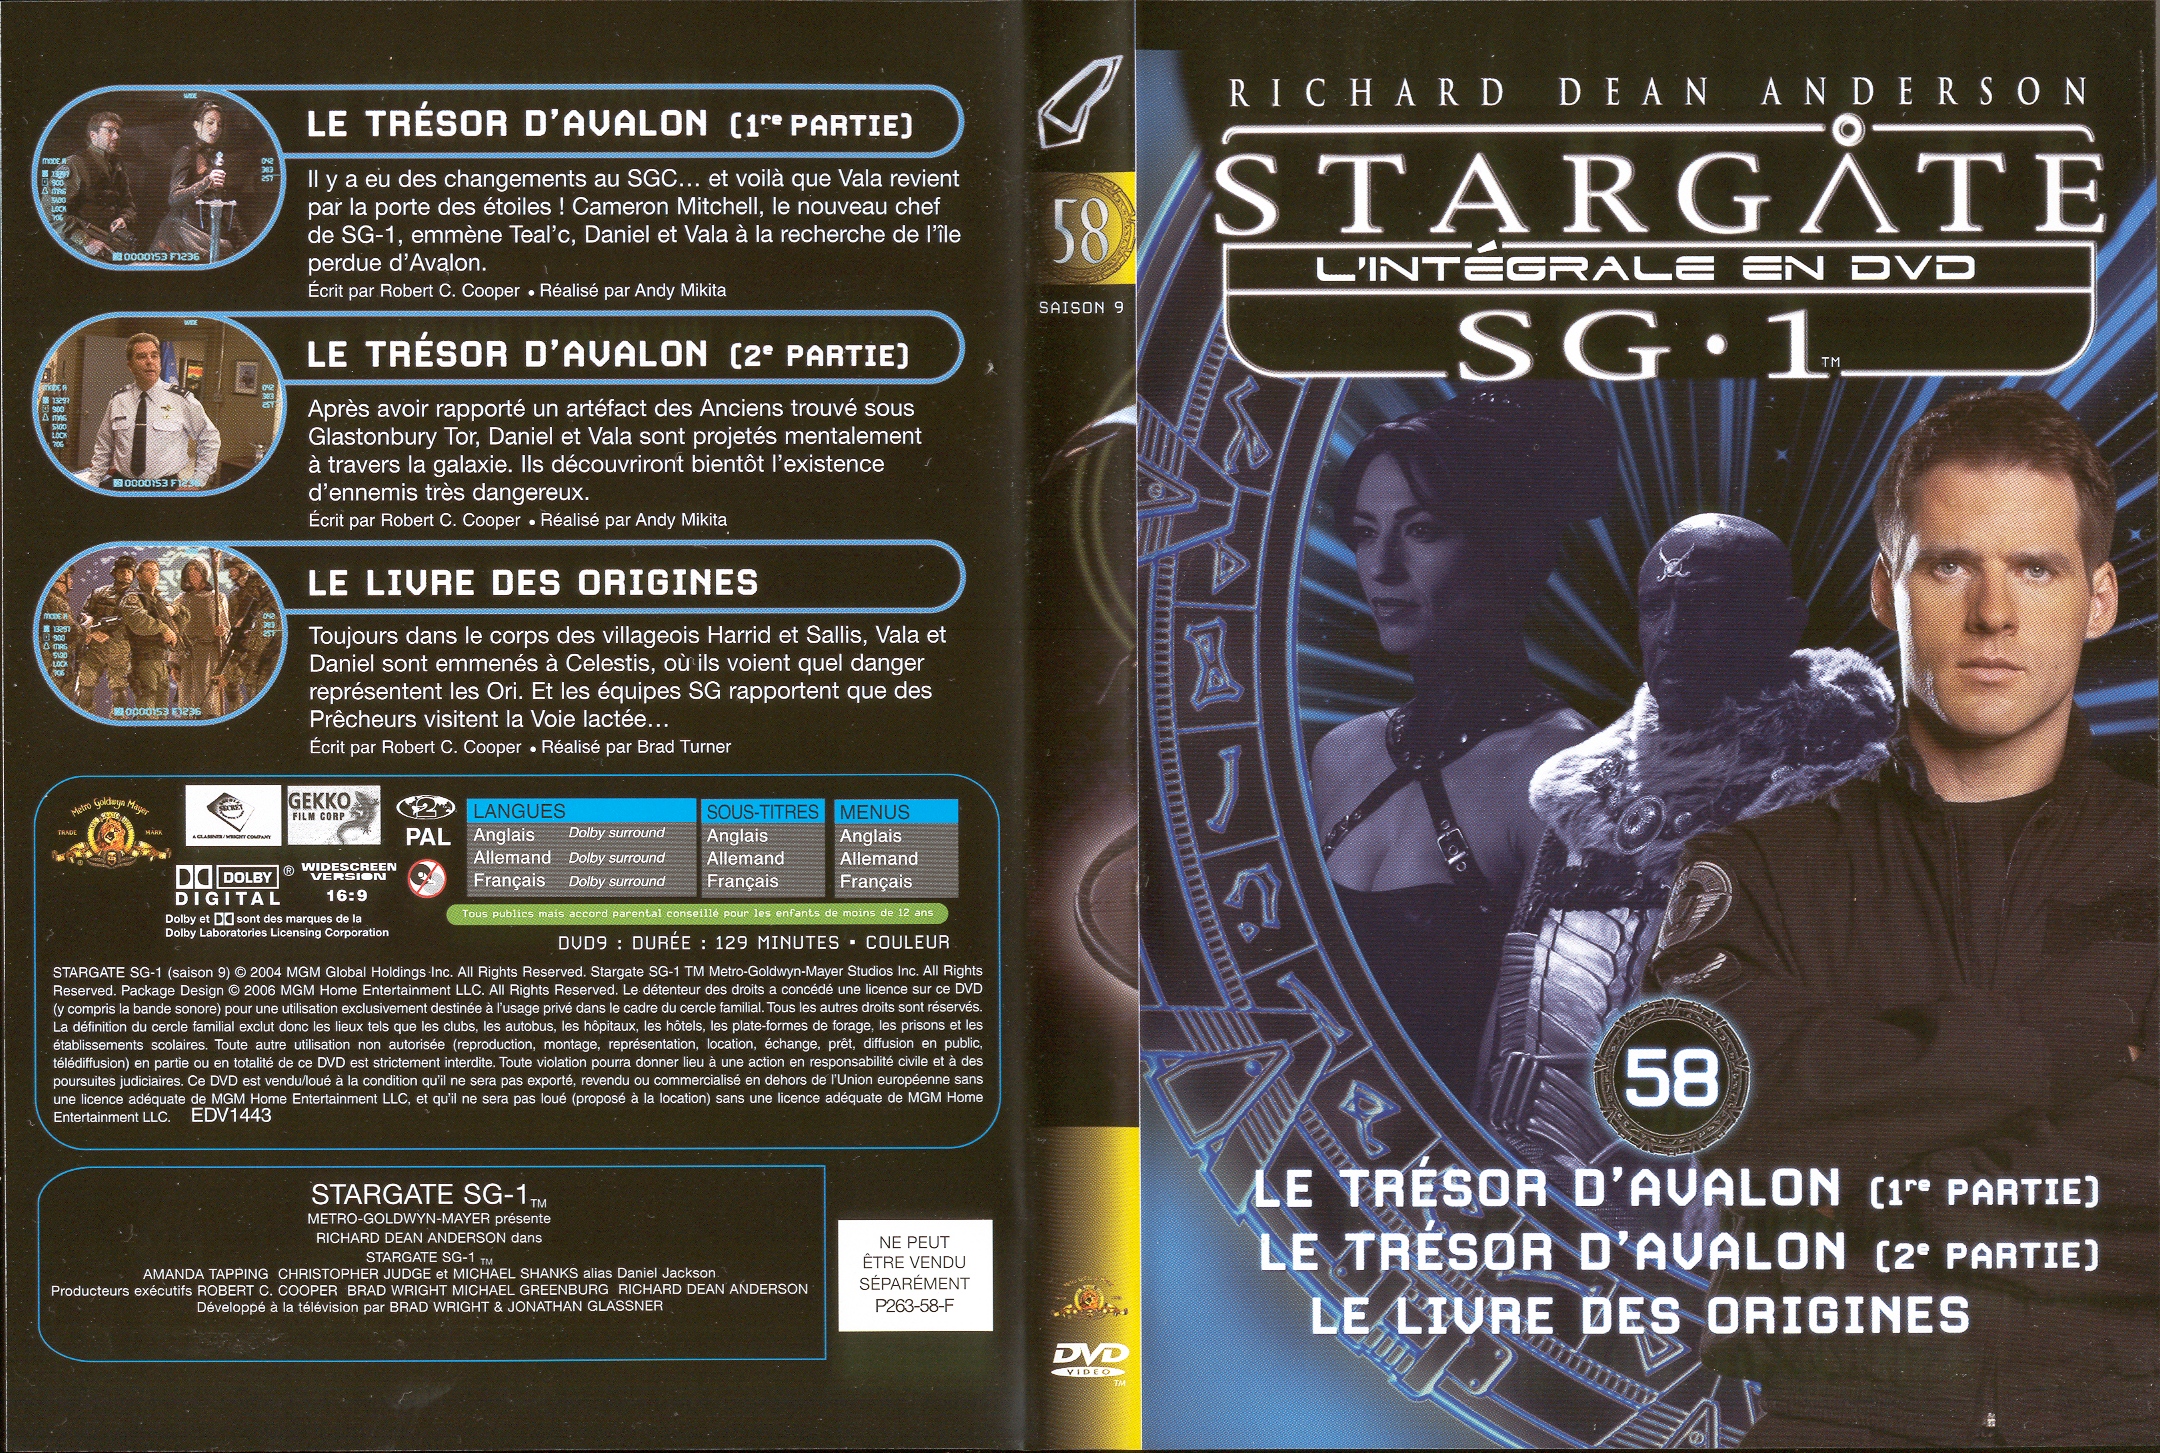 Jaquette DVD Stargate saison 9 vol 58